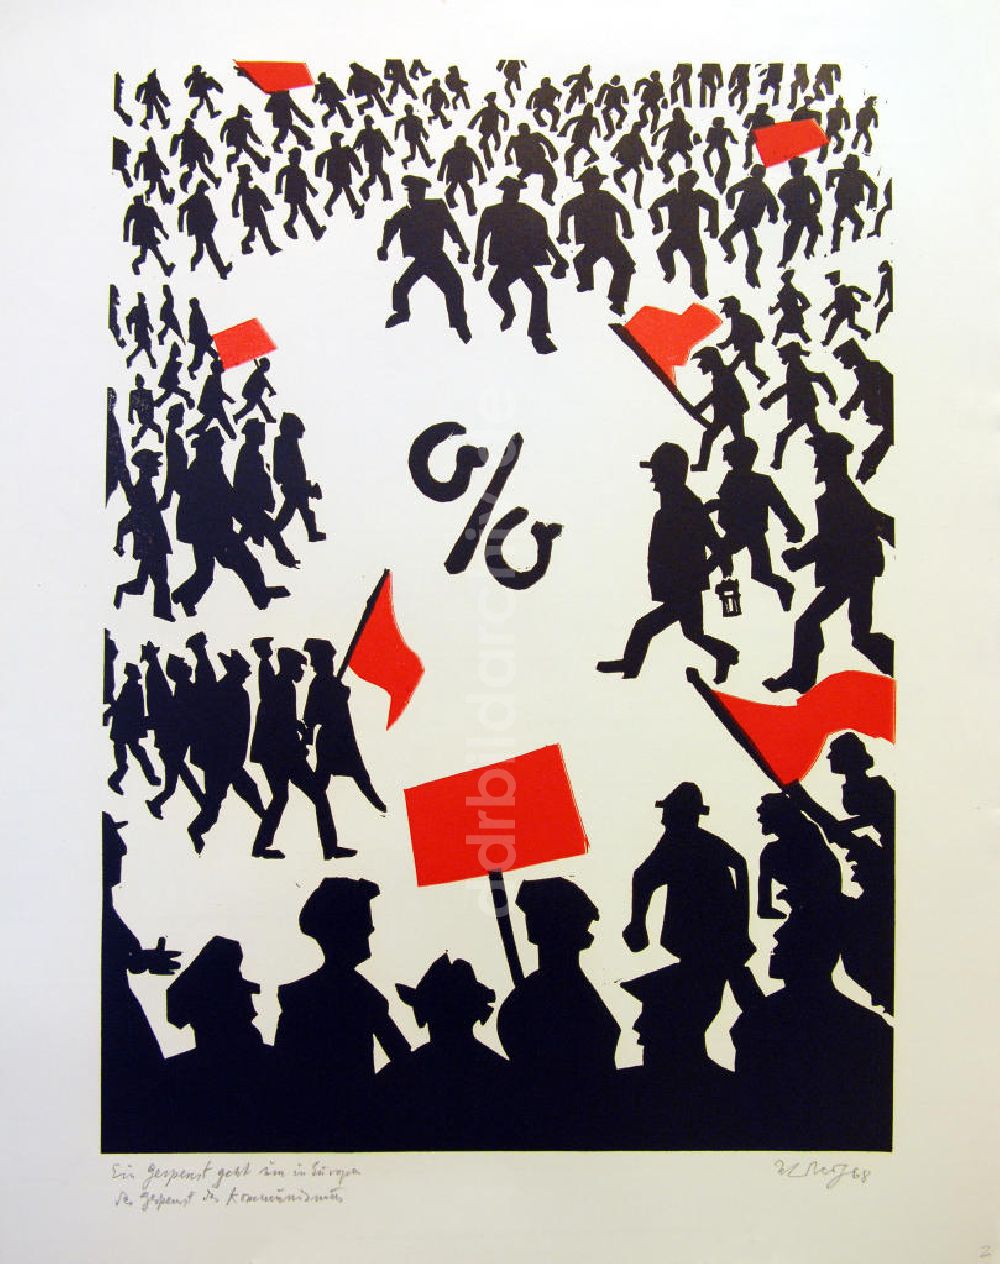 DDR-Bildarchiv: Berlin - Grafik von Herbert Sandberg Motiv 2 aus dem Zyklus Bilder zum Kommunistischen Manifest aus dem Jahr 1968